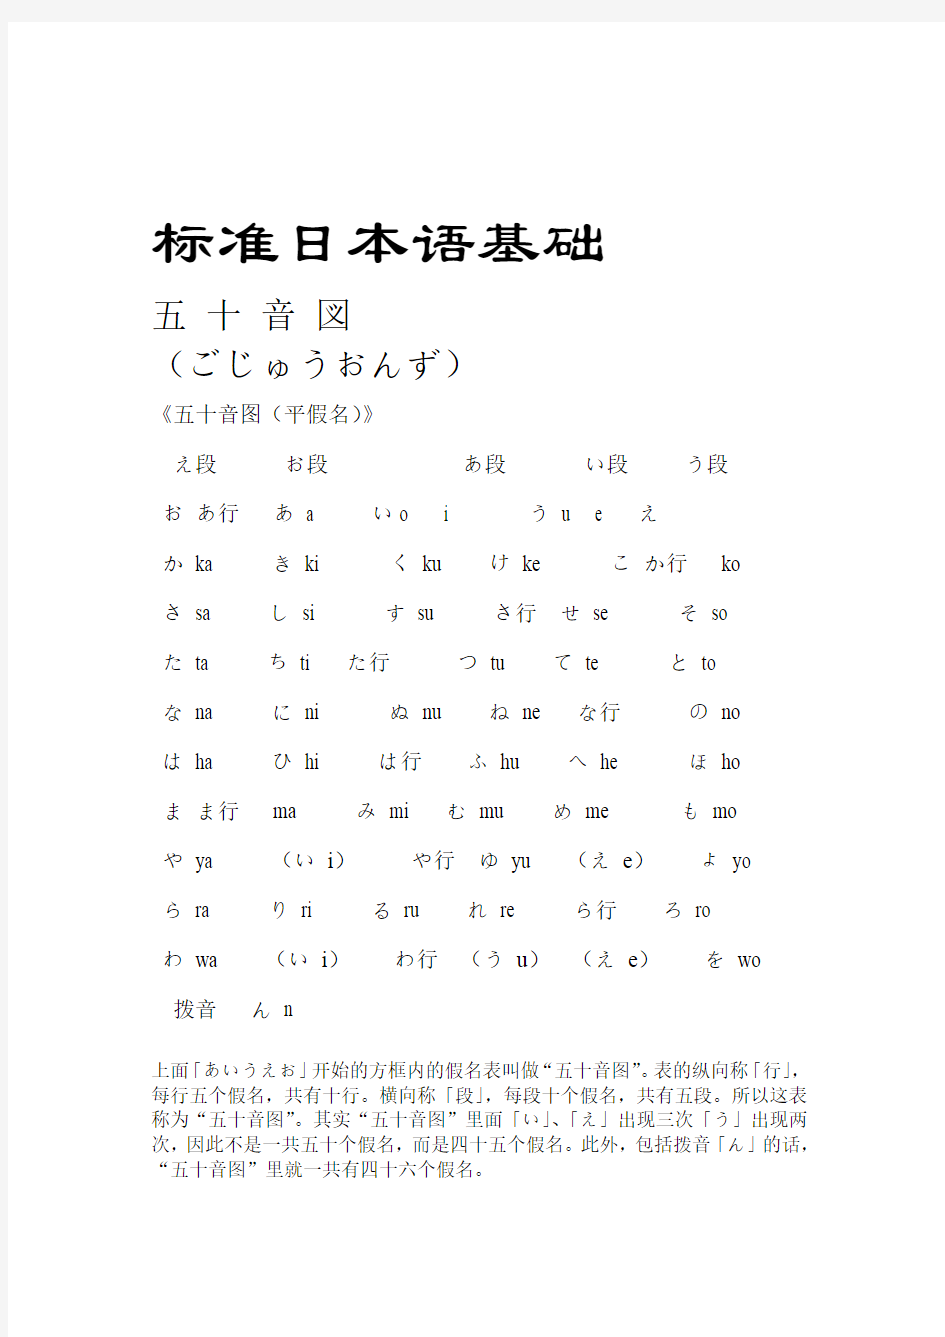 标准日本语基础五十音图平假名片假名发音口型及练习